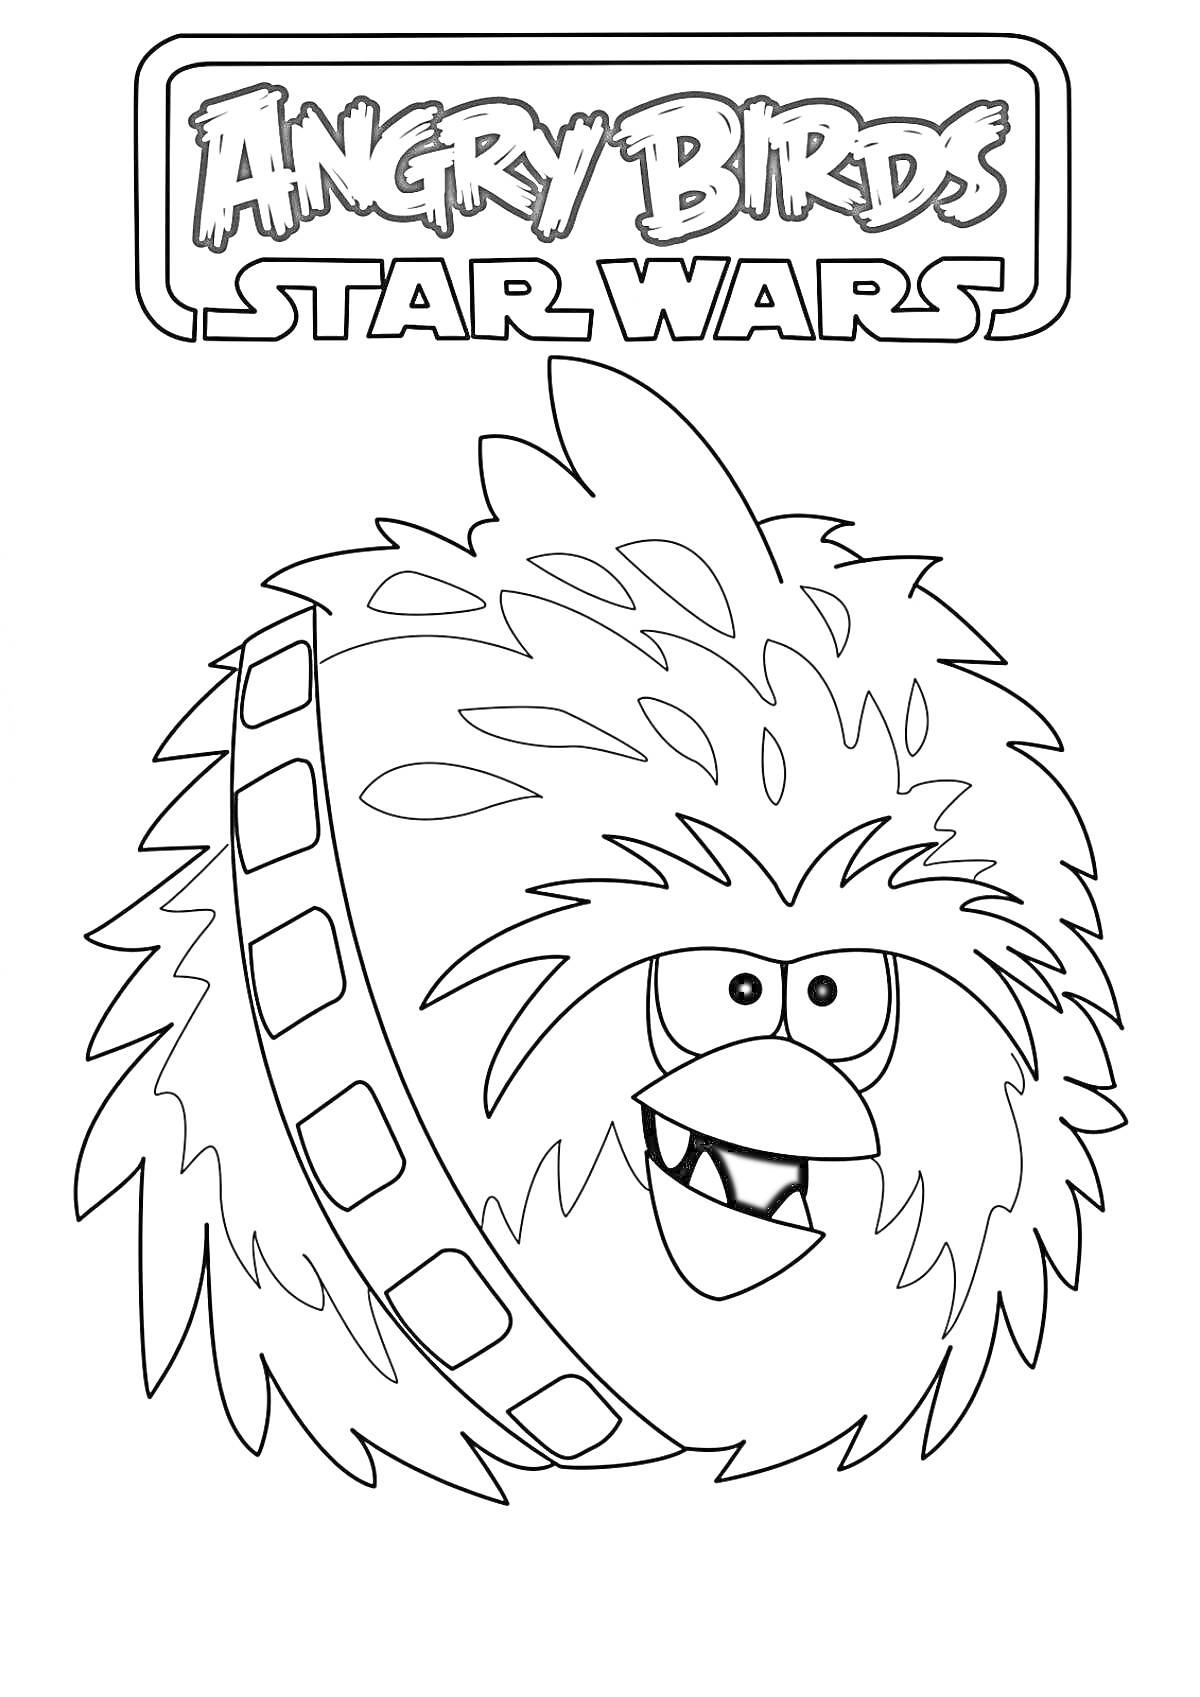 Раскраска Angry Birds Star Wars персонаж, похожий на Чубакку, с полукруглой глазурью через плечо